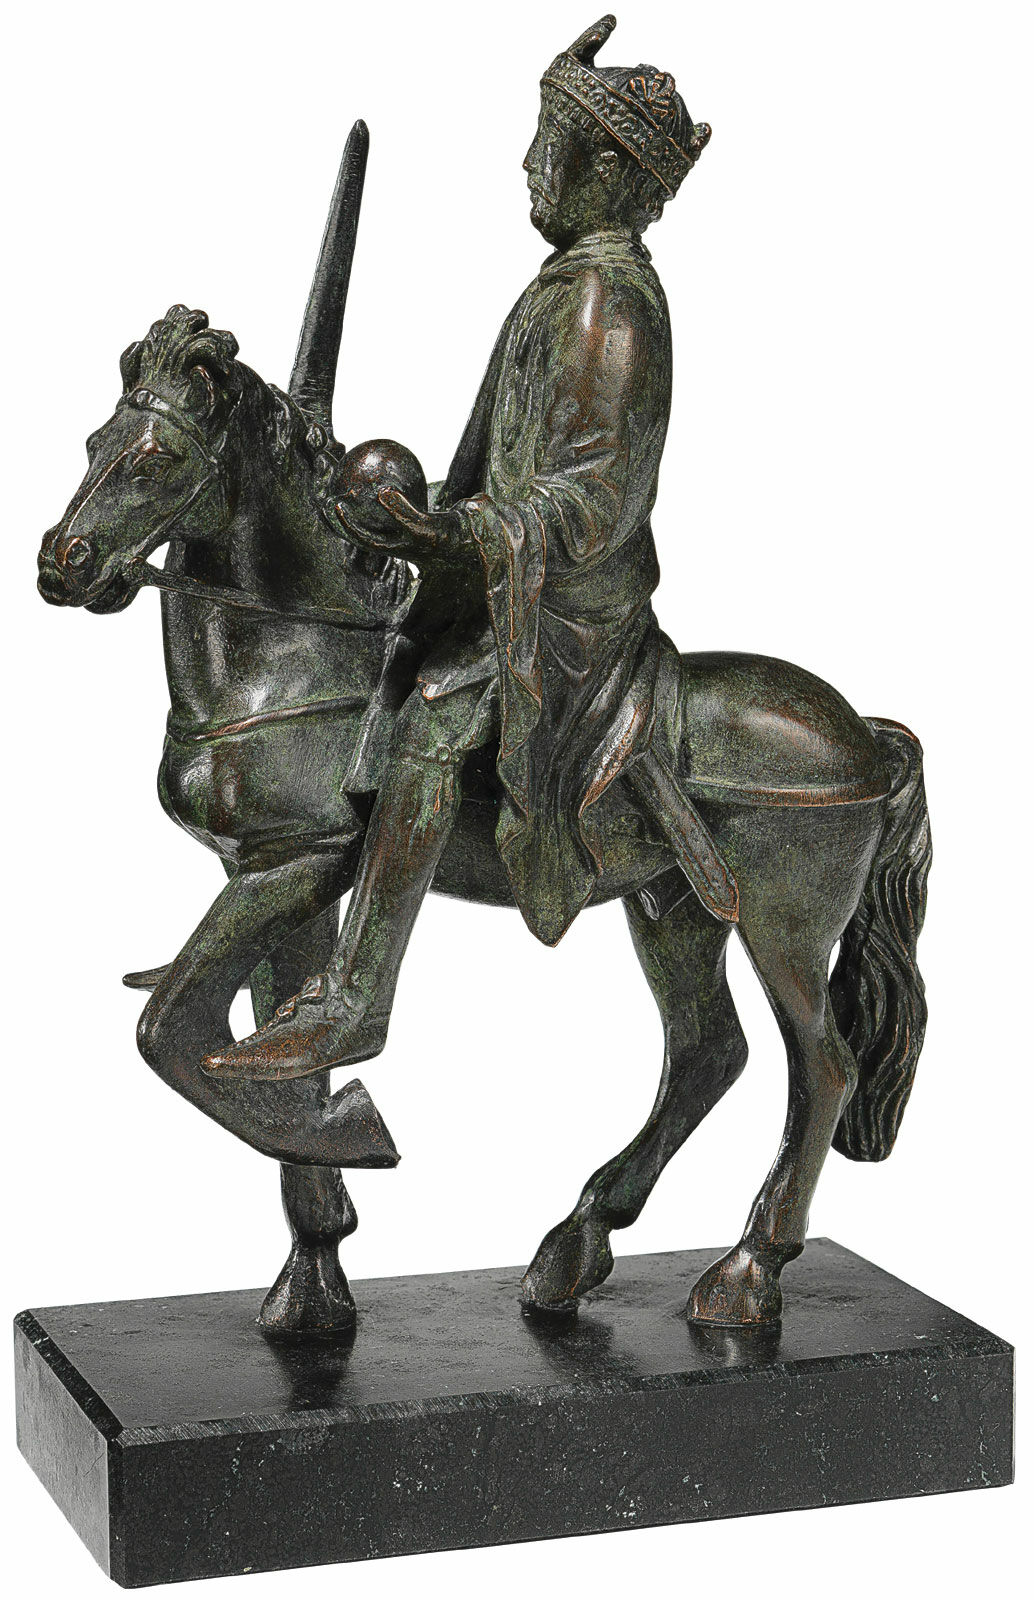 Reiterstatuette "Karl der Große", Version in Bronze